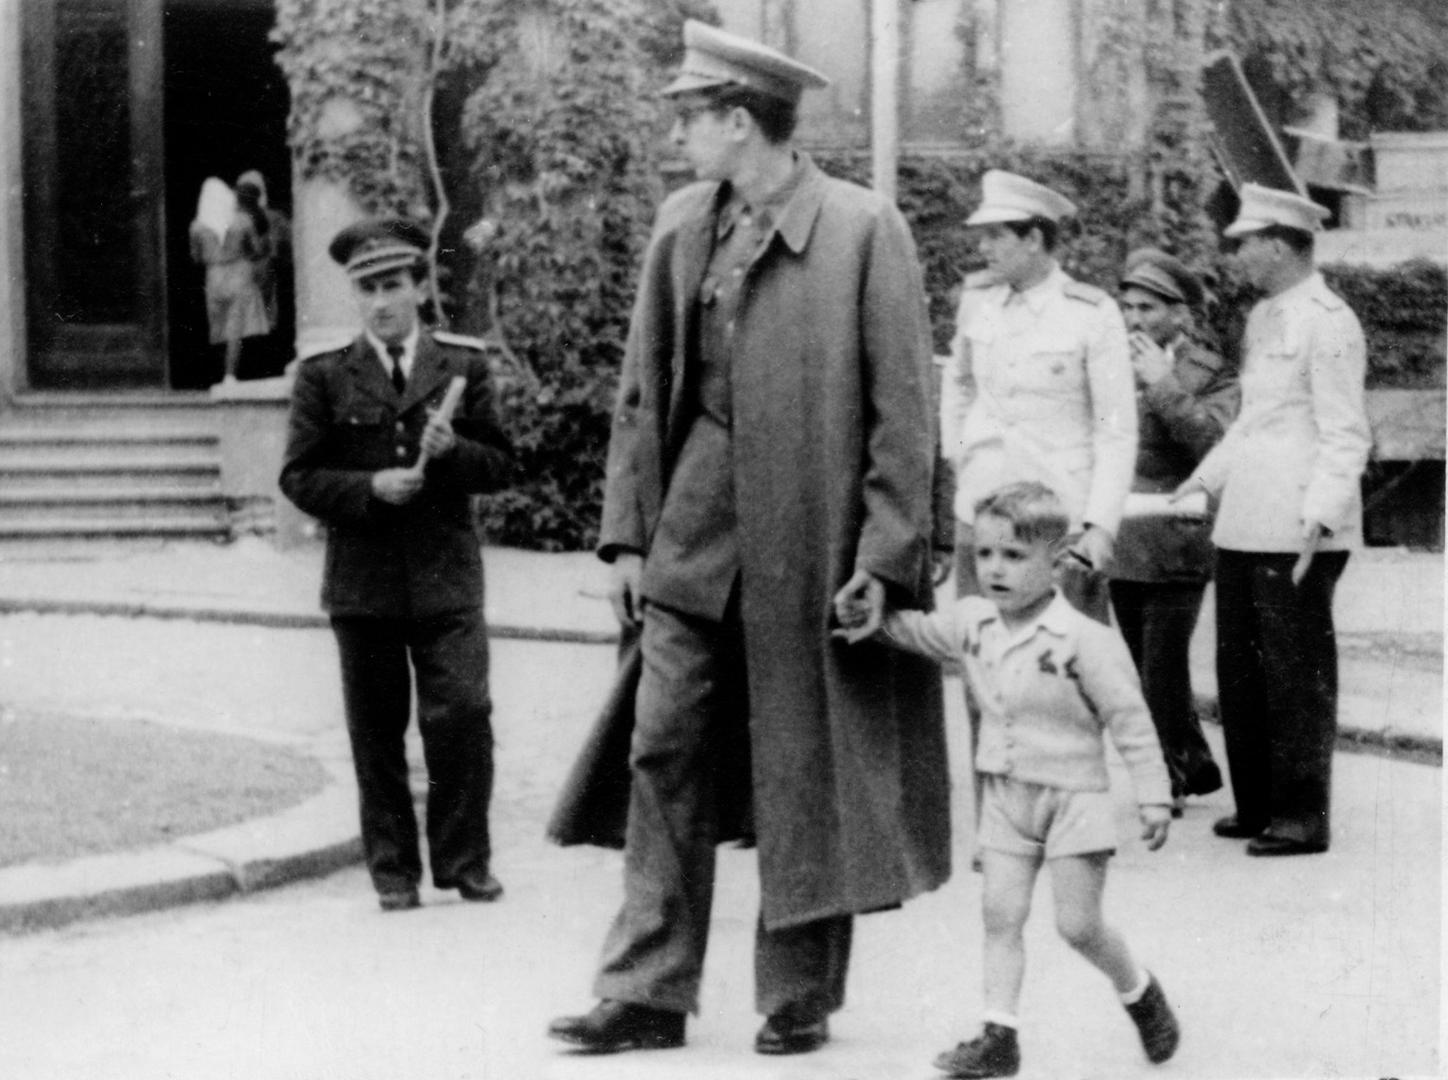 ljeto 1949. - Franjo Tuđman u šetnji beogradskim ulicama sa sinom Miroslavom; drži ga za ruku premda to vojni propisi nisu dopuštali